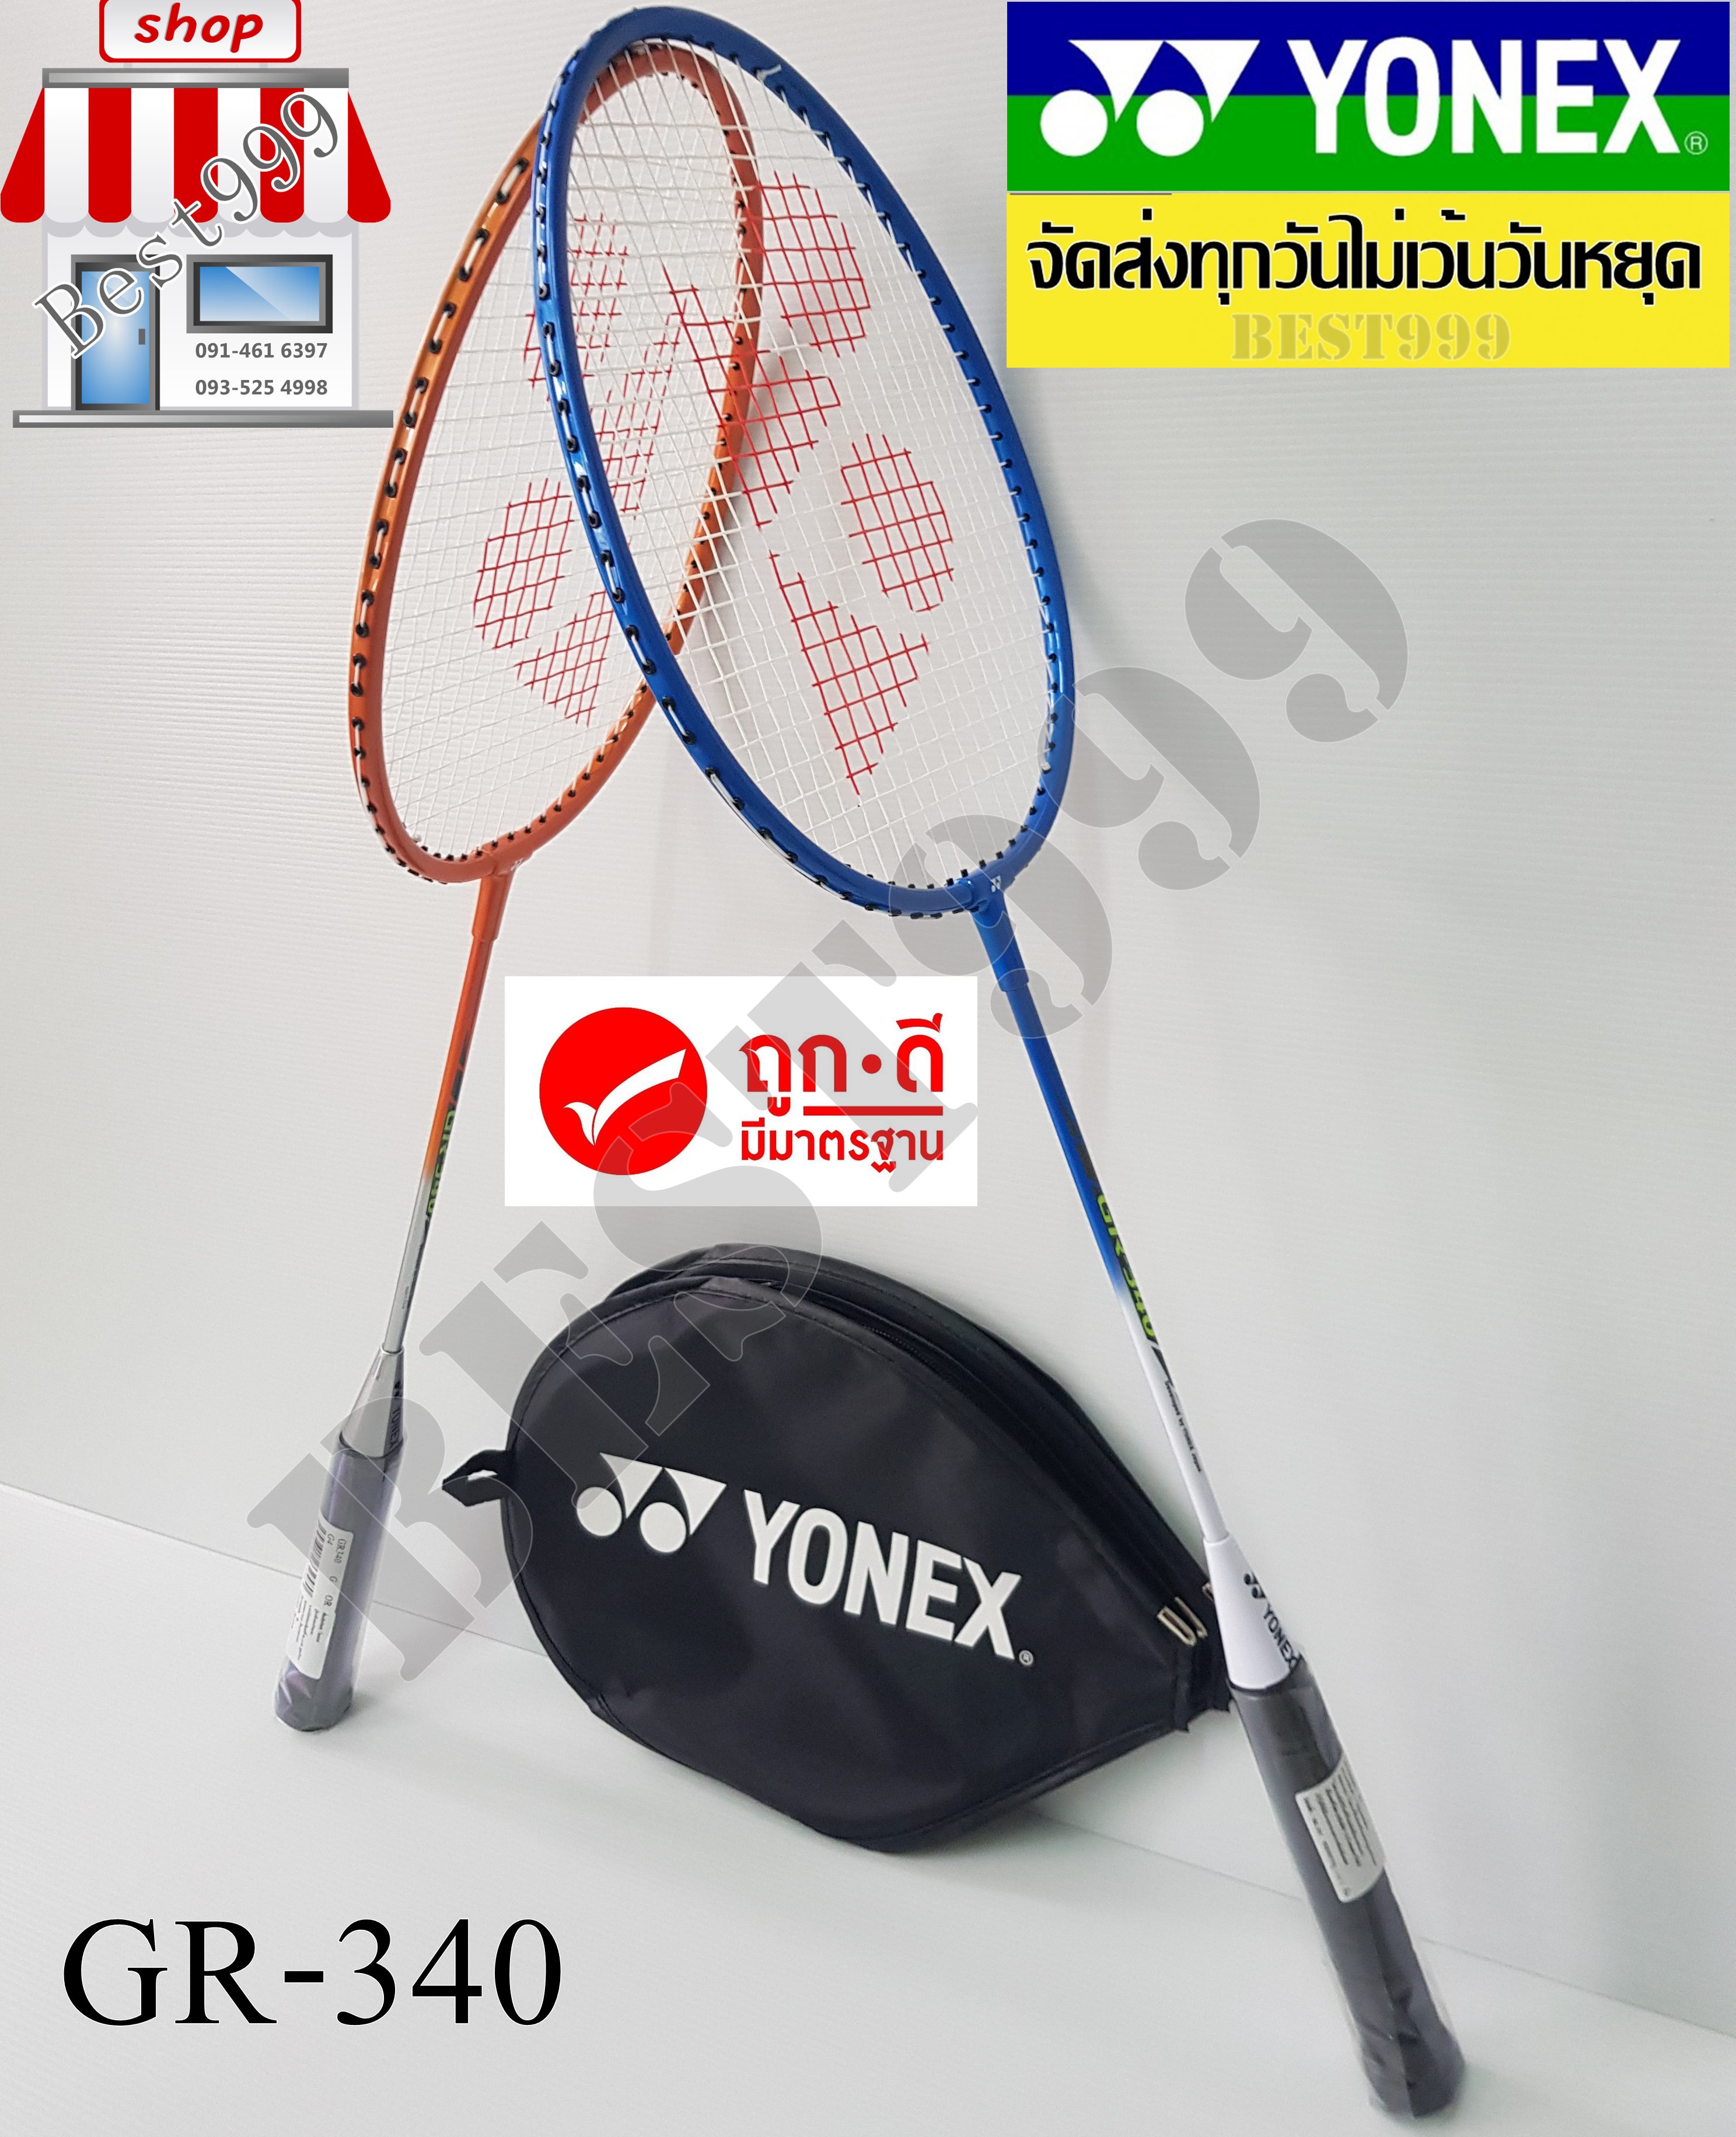 รูปภาพของ ไม้แบด yonex รุ่น GR-340 (รุ่นใหม่) badminton racket ไม้แบดมินตัน ไม้ตีแบด badminton YONEX โยเน็กซ์ แบด กีฬาแบด